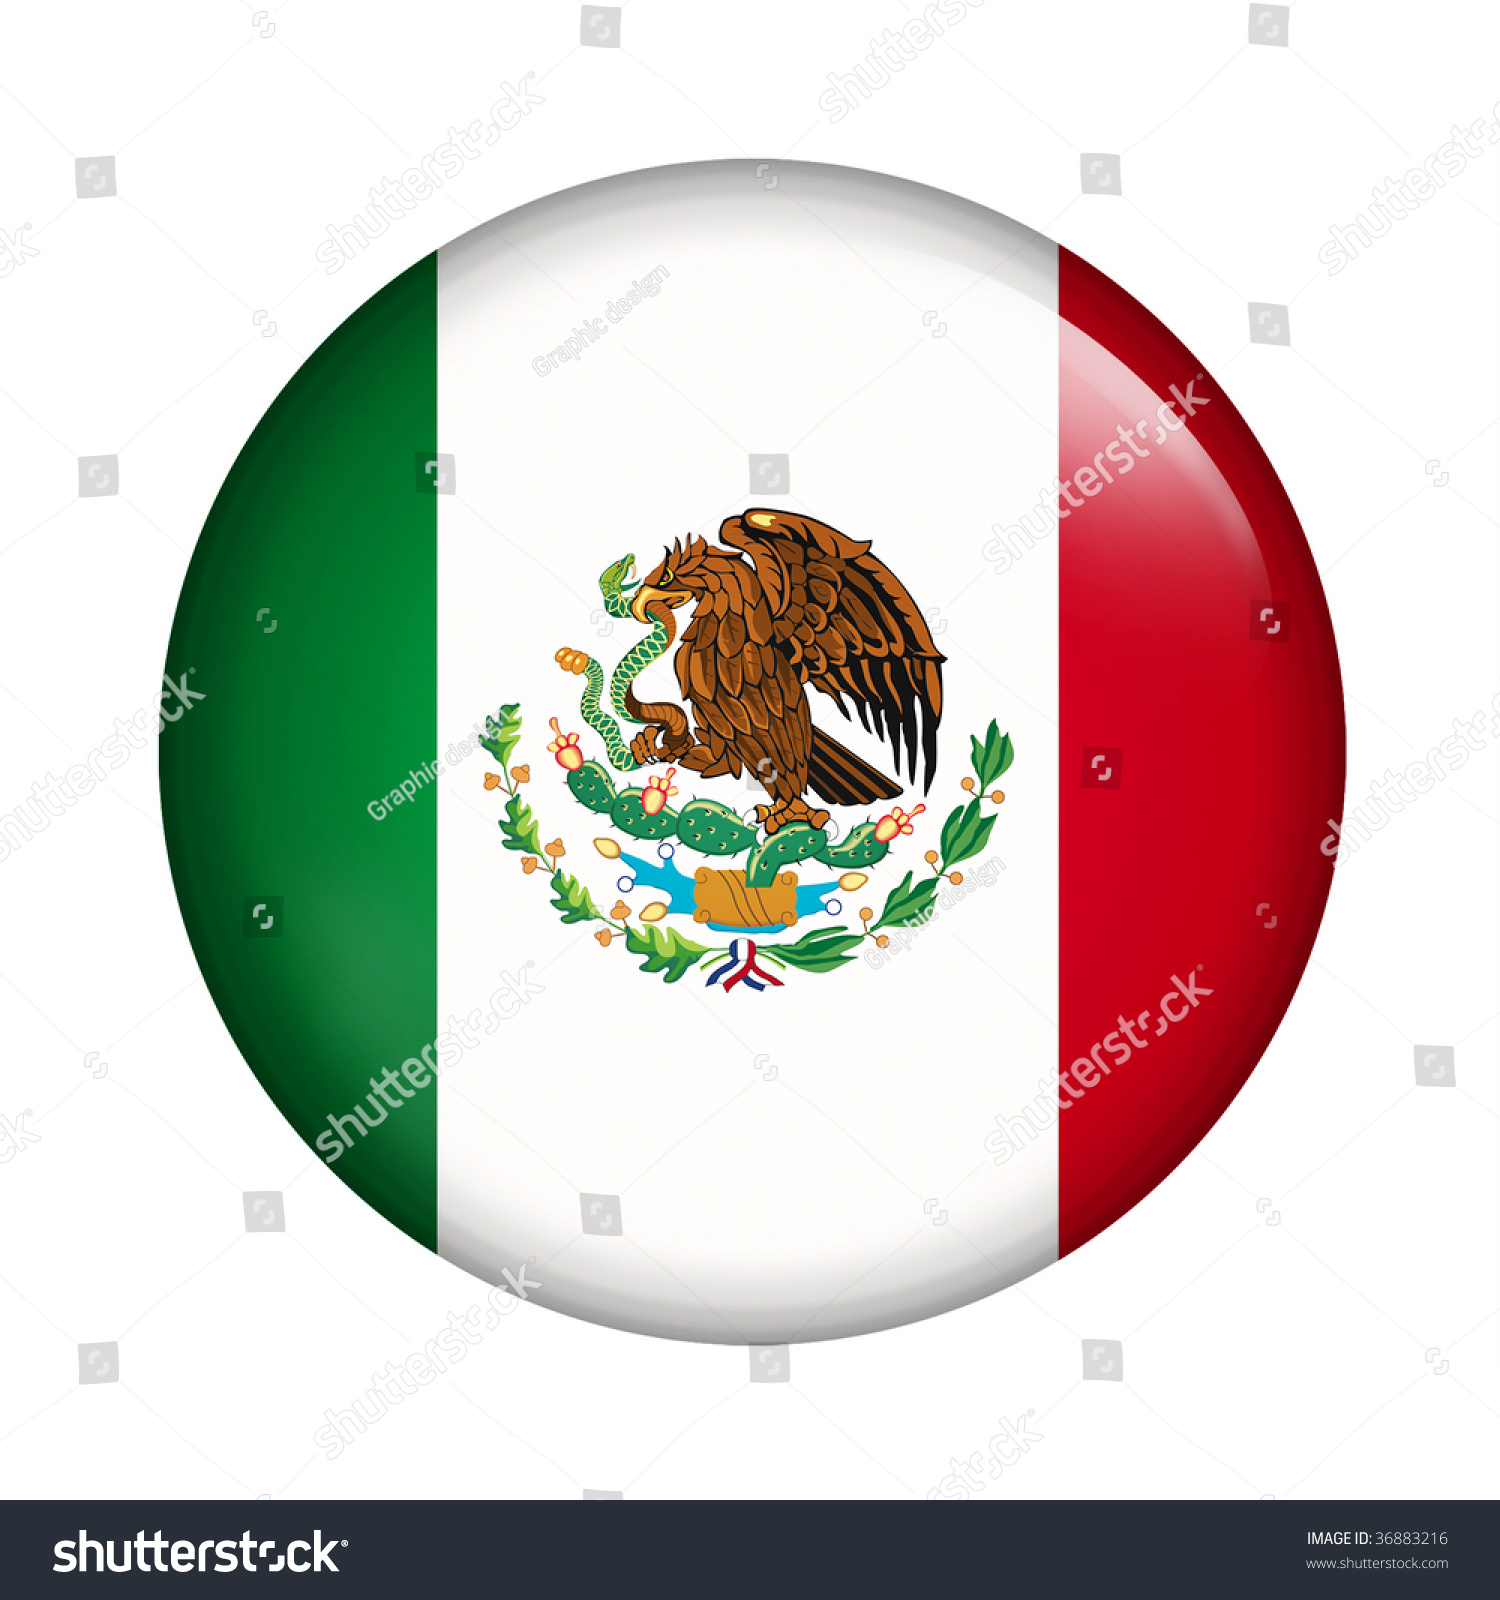 メキシコの丸いボタン国旗 のイラスト素材 3616